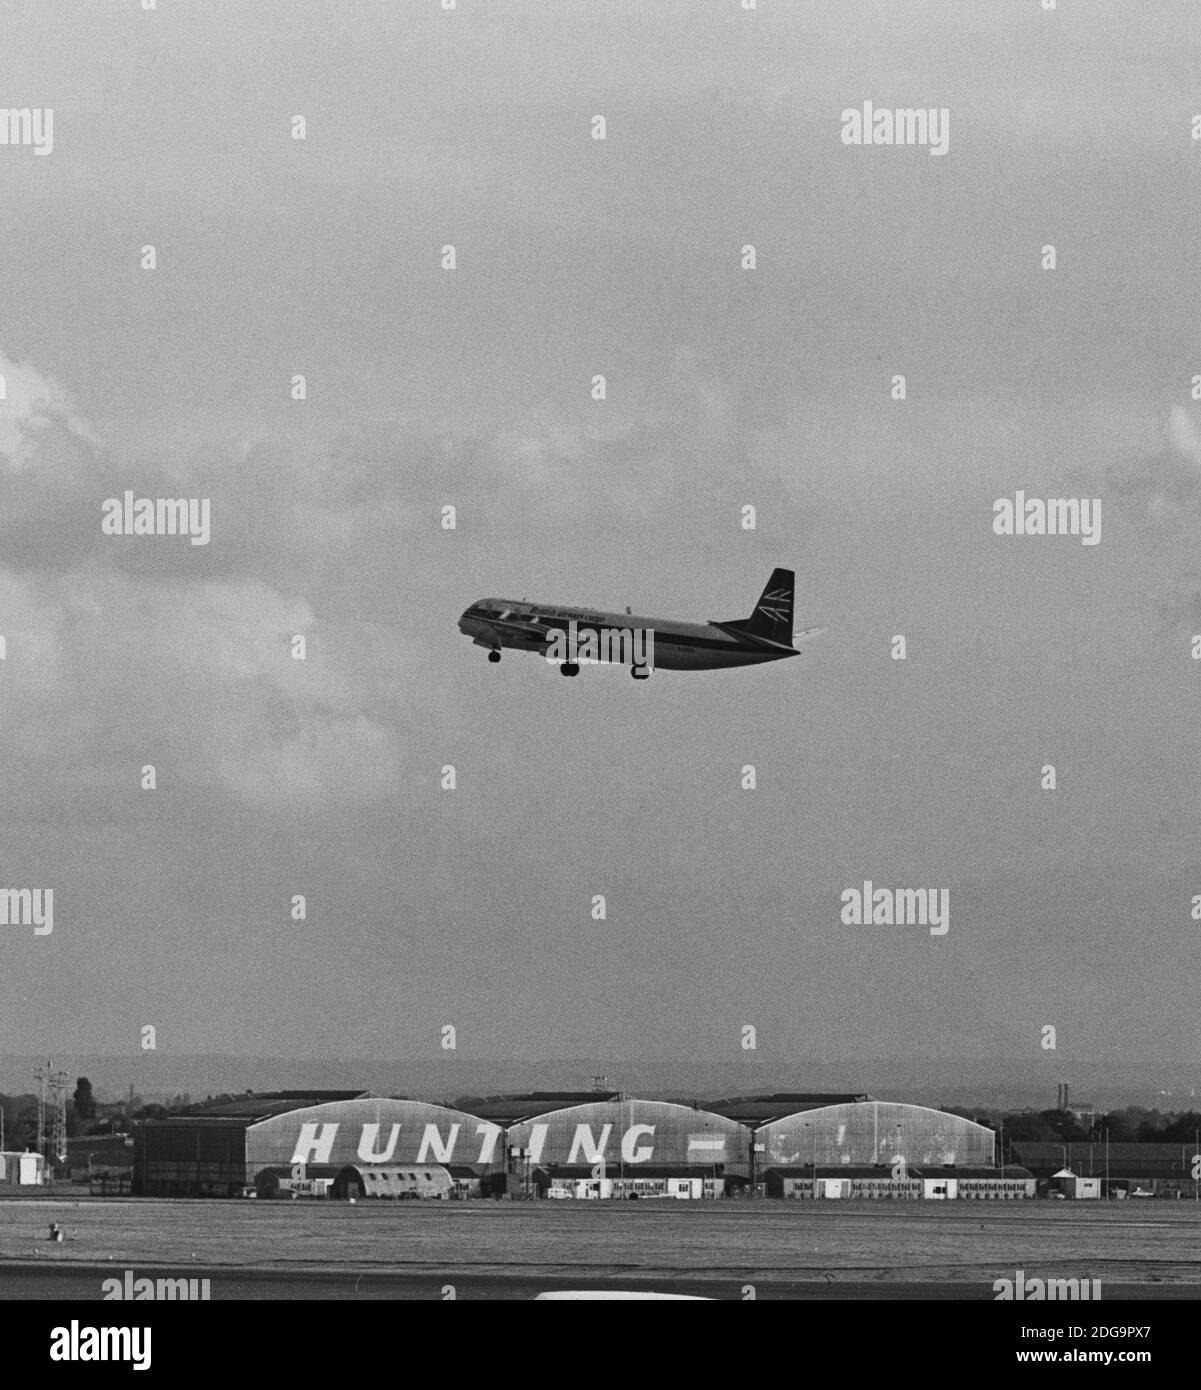 Image monochrome d'archive d'un avion de ligne Vickers Vanguard 953C Merchantman dans British Airways fret livrée dans l'air à l'aéroport de Heathrow, Londres, 1979, avec une vue de Hunting-Clan Air transport hangar, démoli 1986. Peut-être G-APEP 'Superb' maintenant au Brooklands Museum Surrey England. Autre récolte 2JF3A1E Banque D'Images